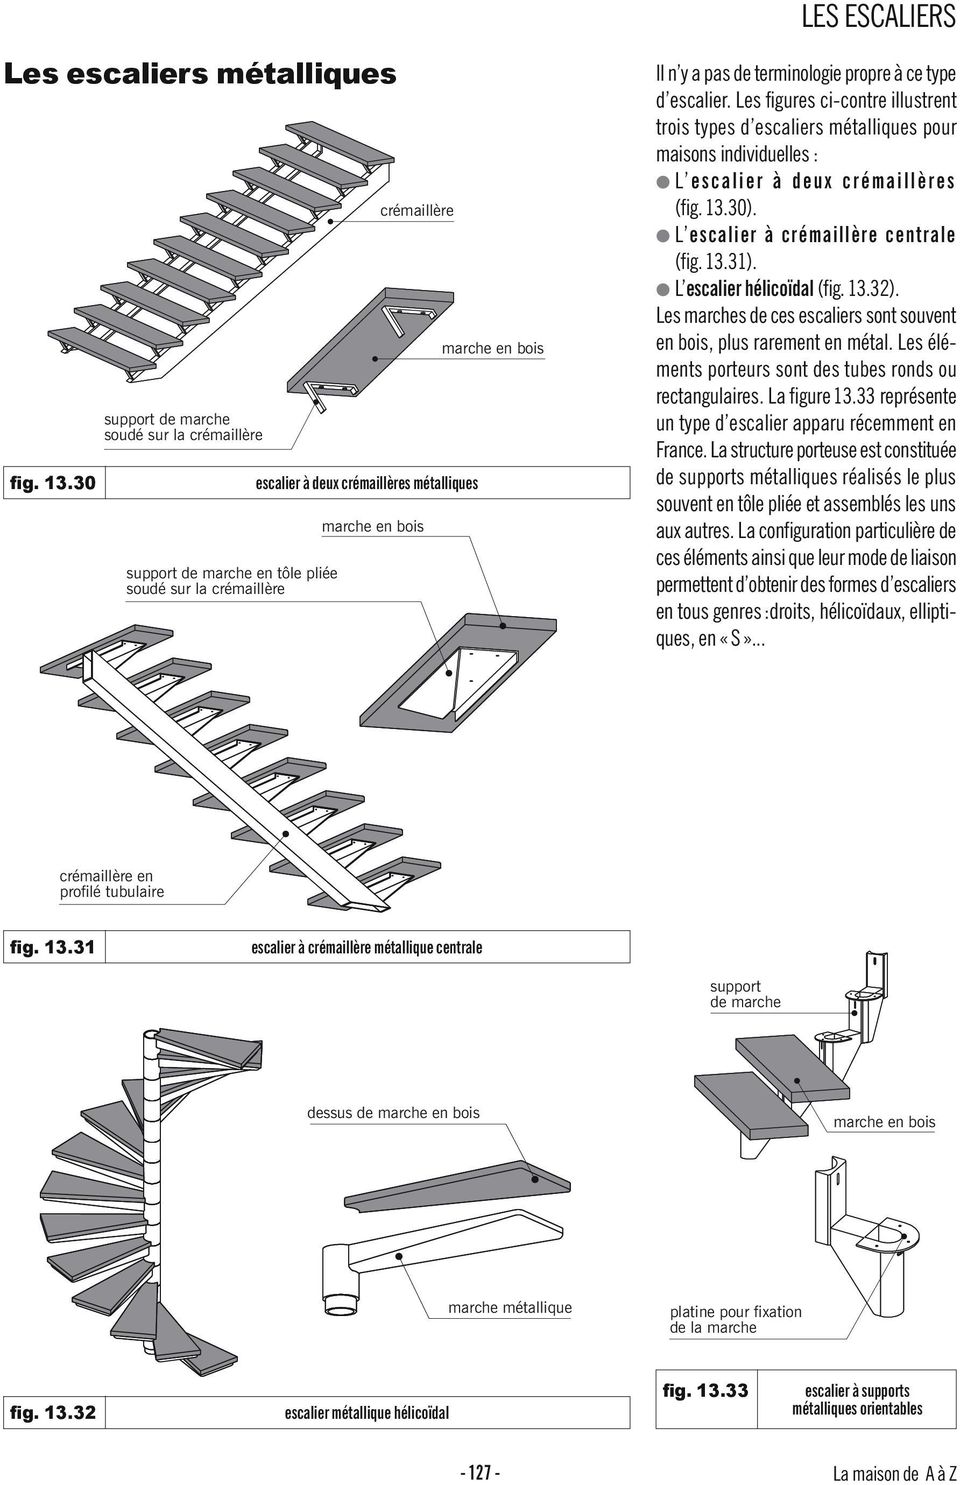 L escalier hélicoïdal (fig. 13.32). Les marches de ces escaliers sont souvent en bois, plus rarement en métal. Les éléments porteurs sont des tubes ronds ou rectangulaires. La figure 13.